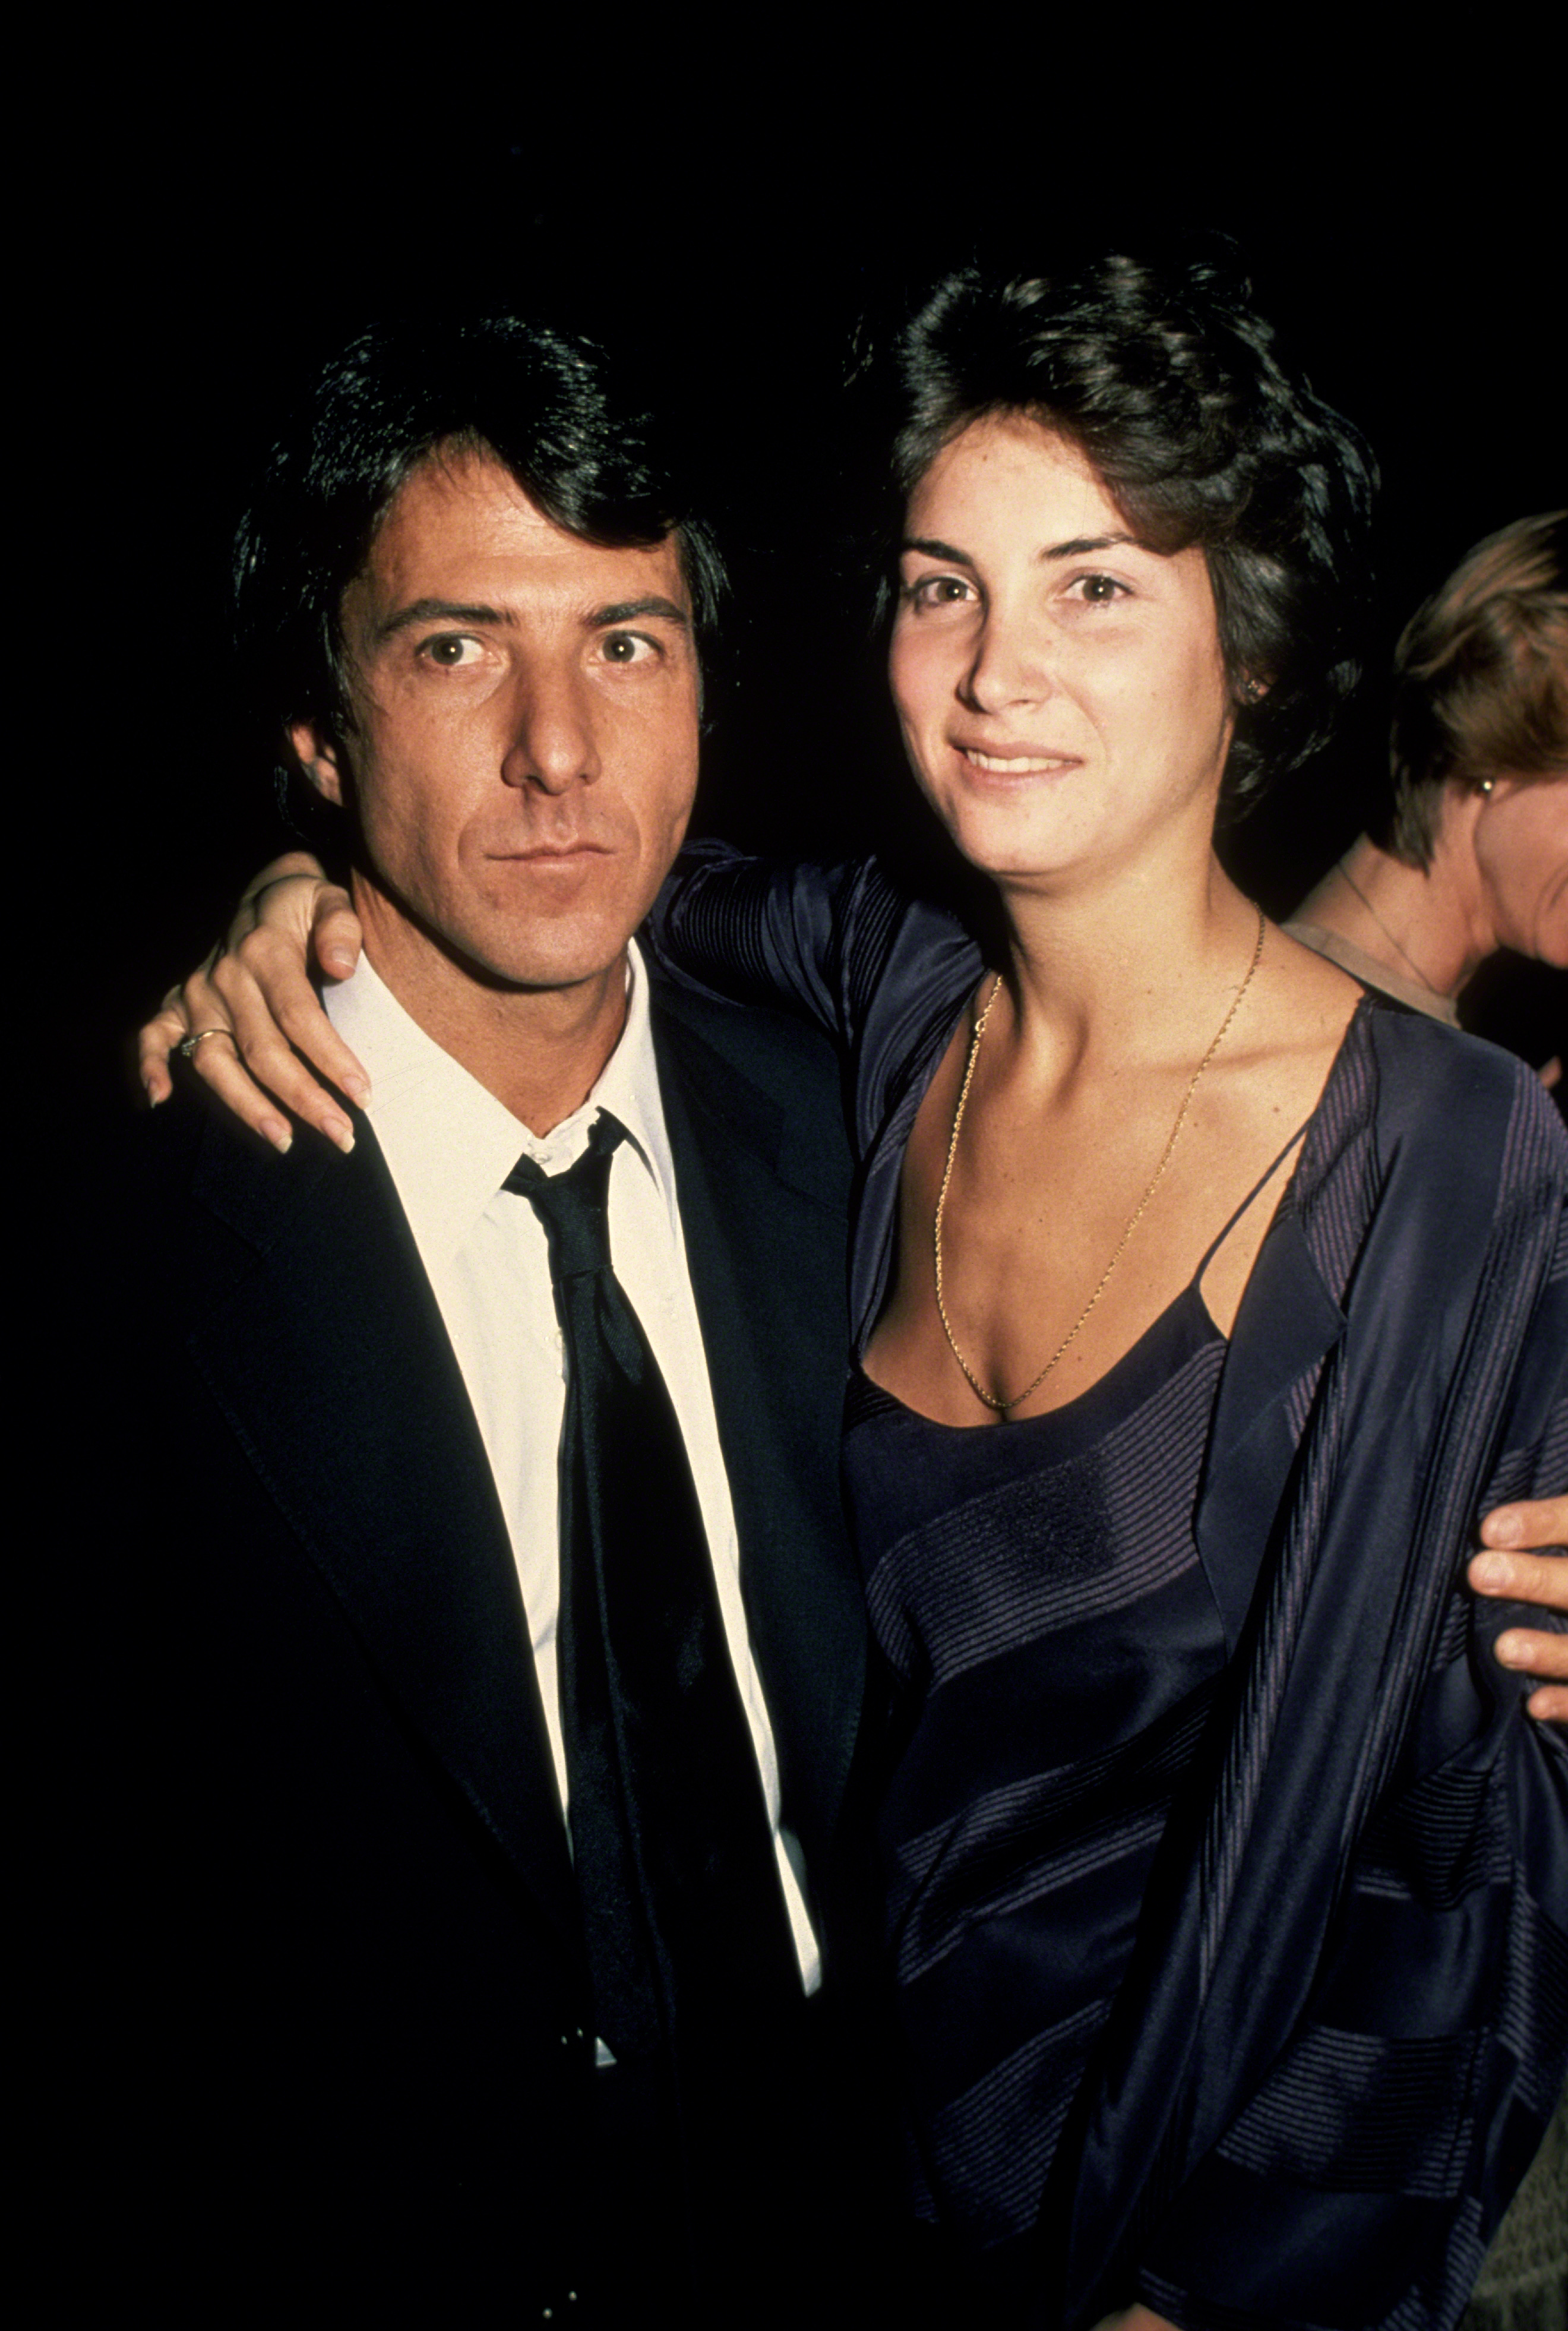 Der Schauspieler und die Frau in New York City im Jahr 1979. | Quelle: Getty Images